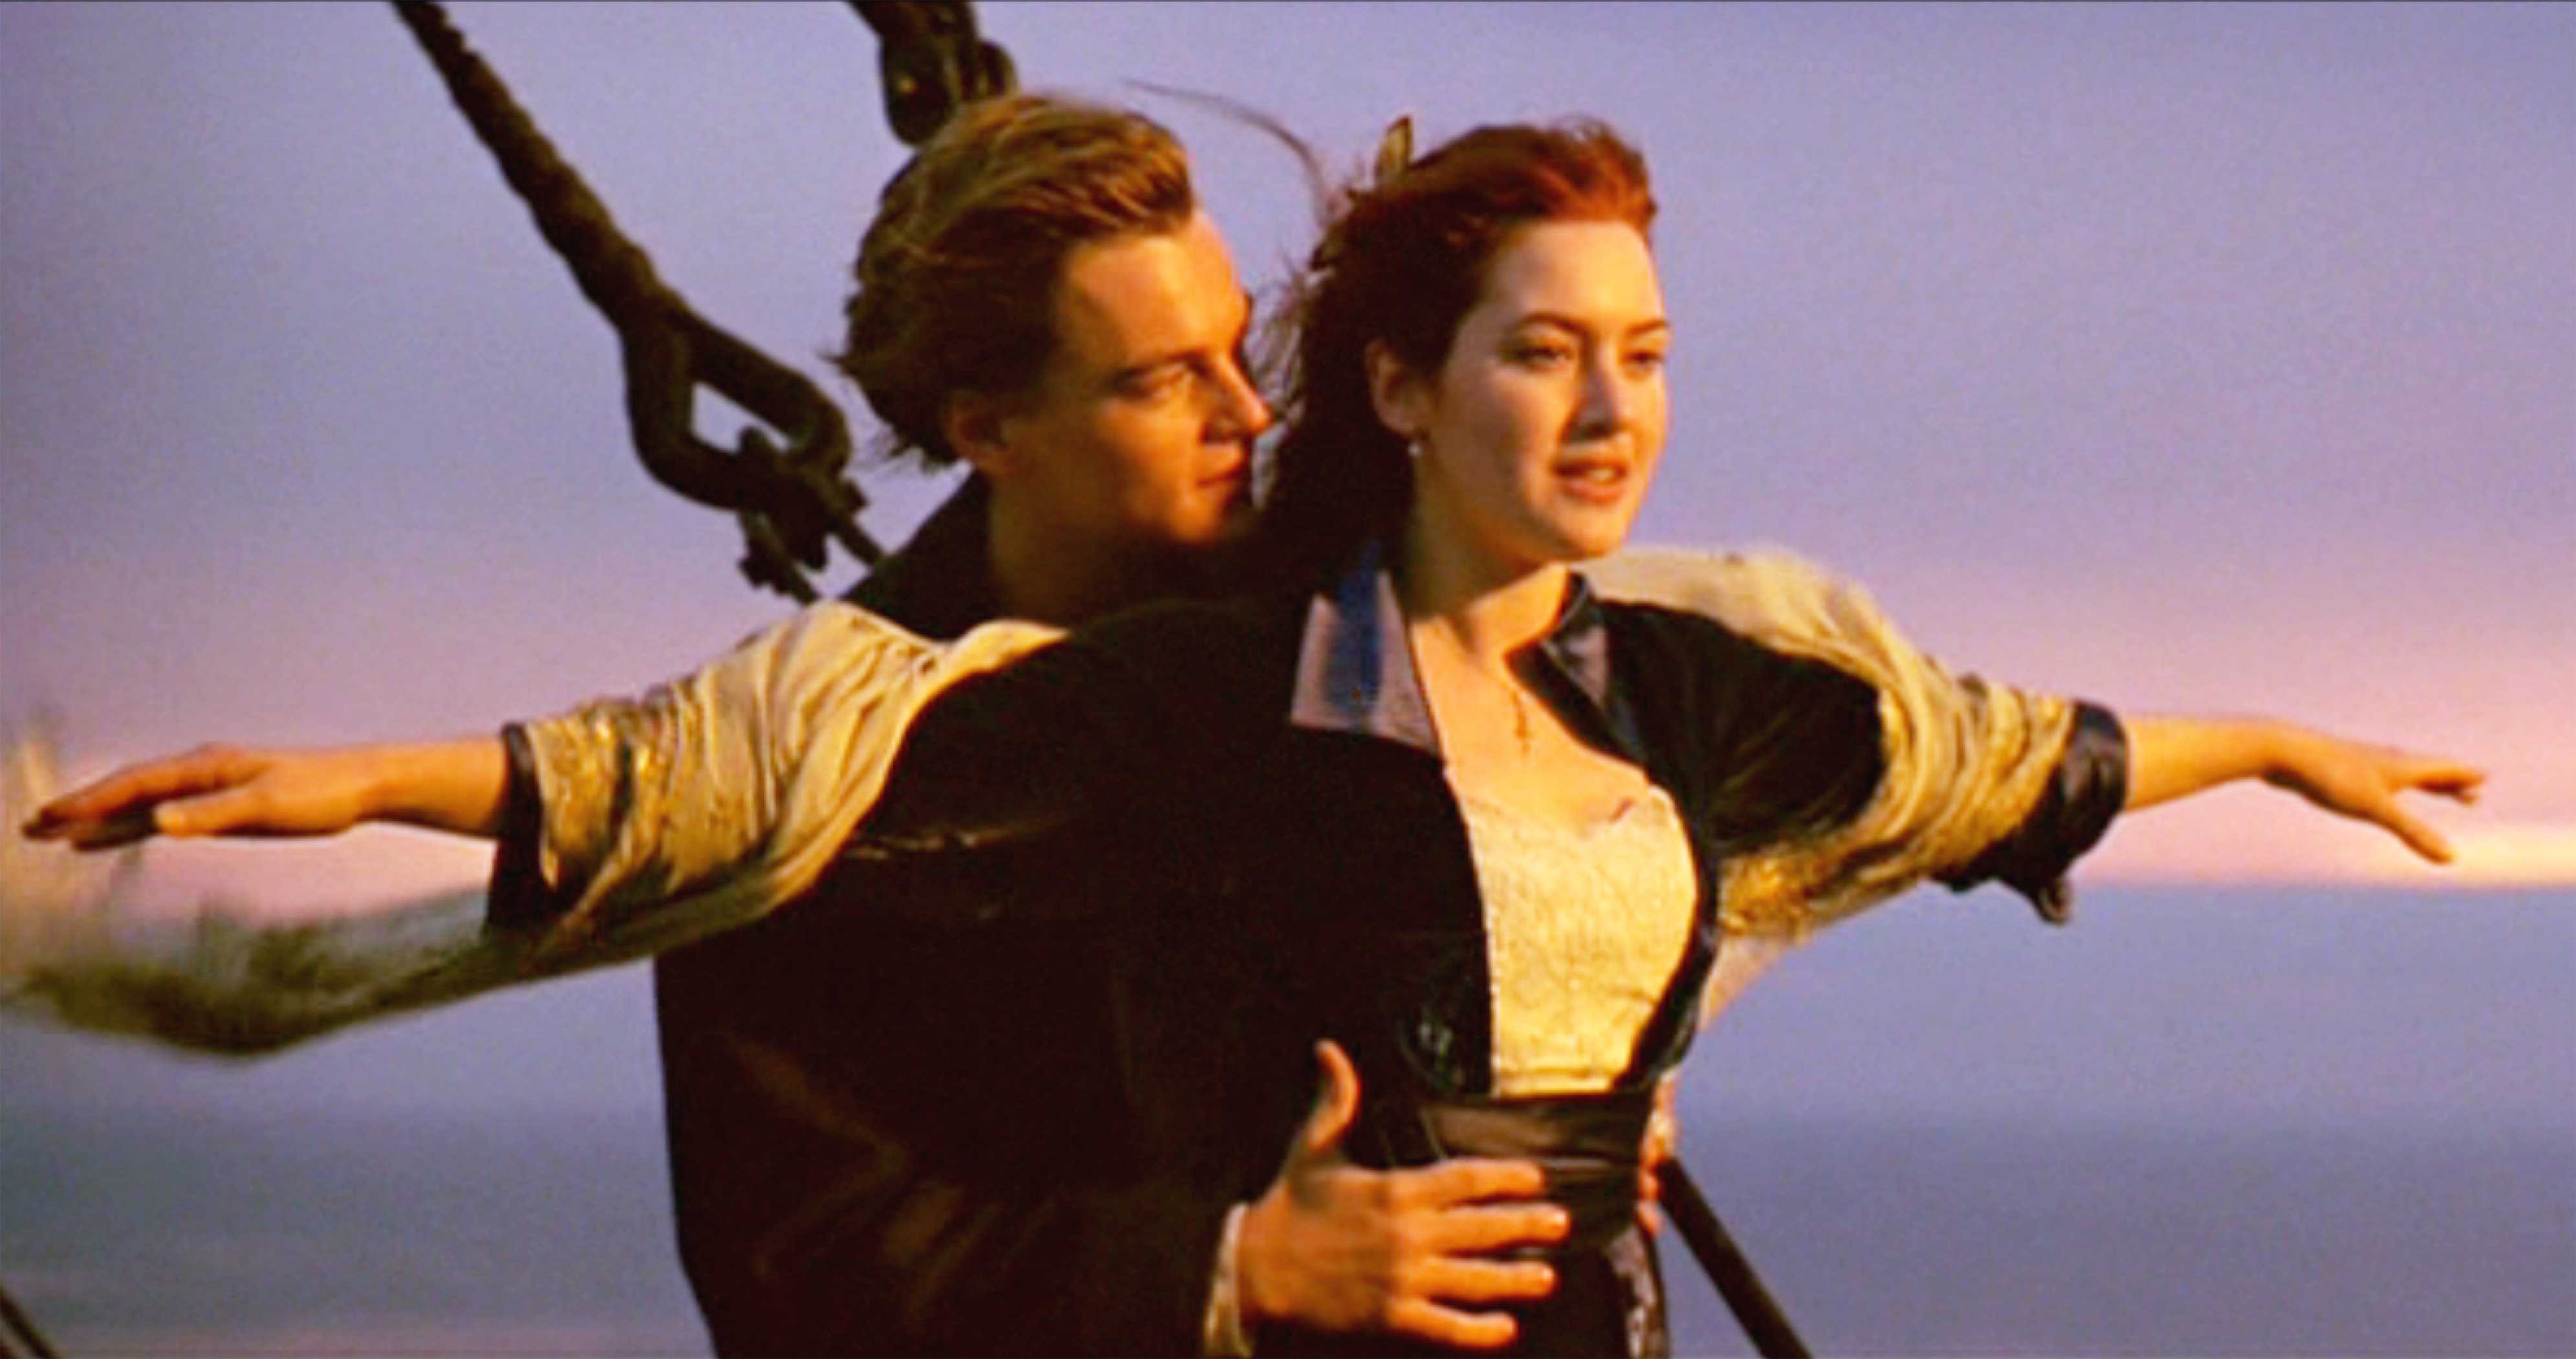 Leonardo Dicaprio and Kate Winslet star in Titanic.